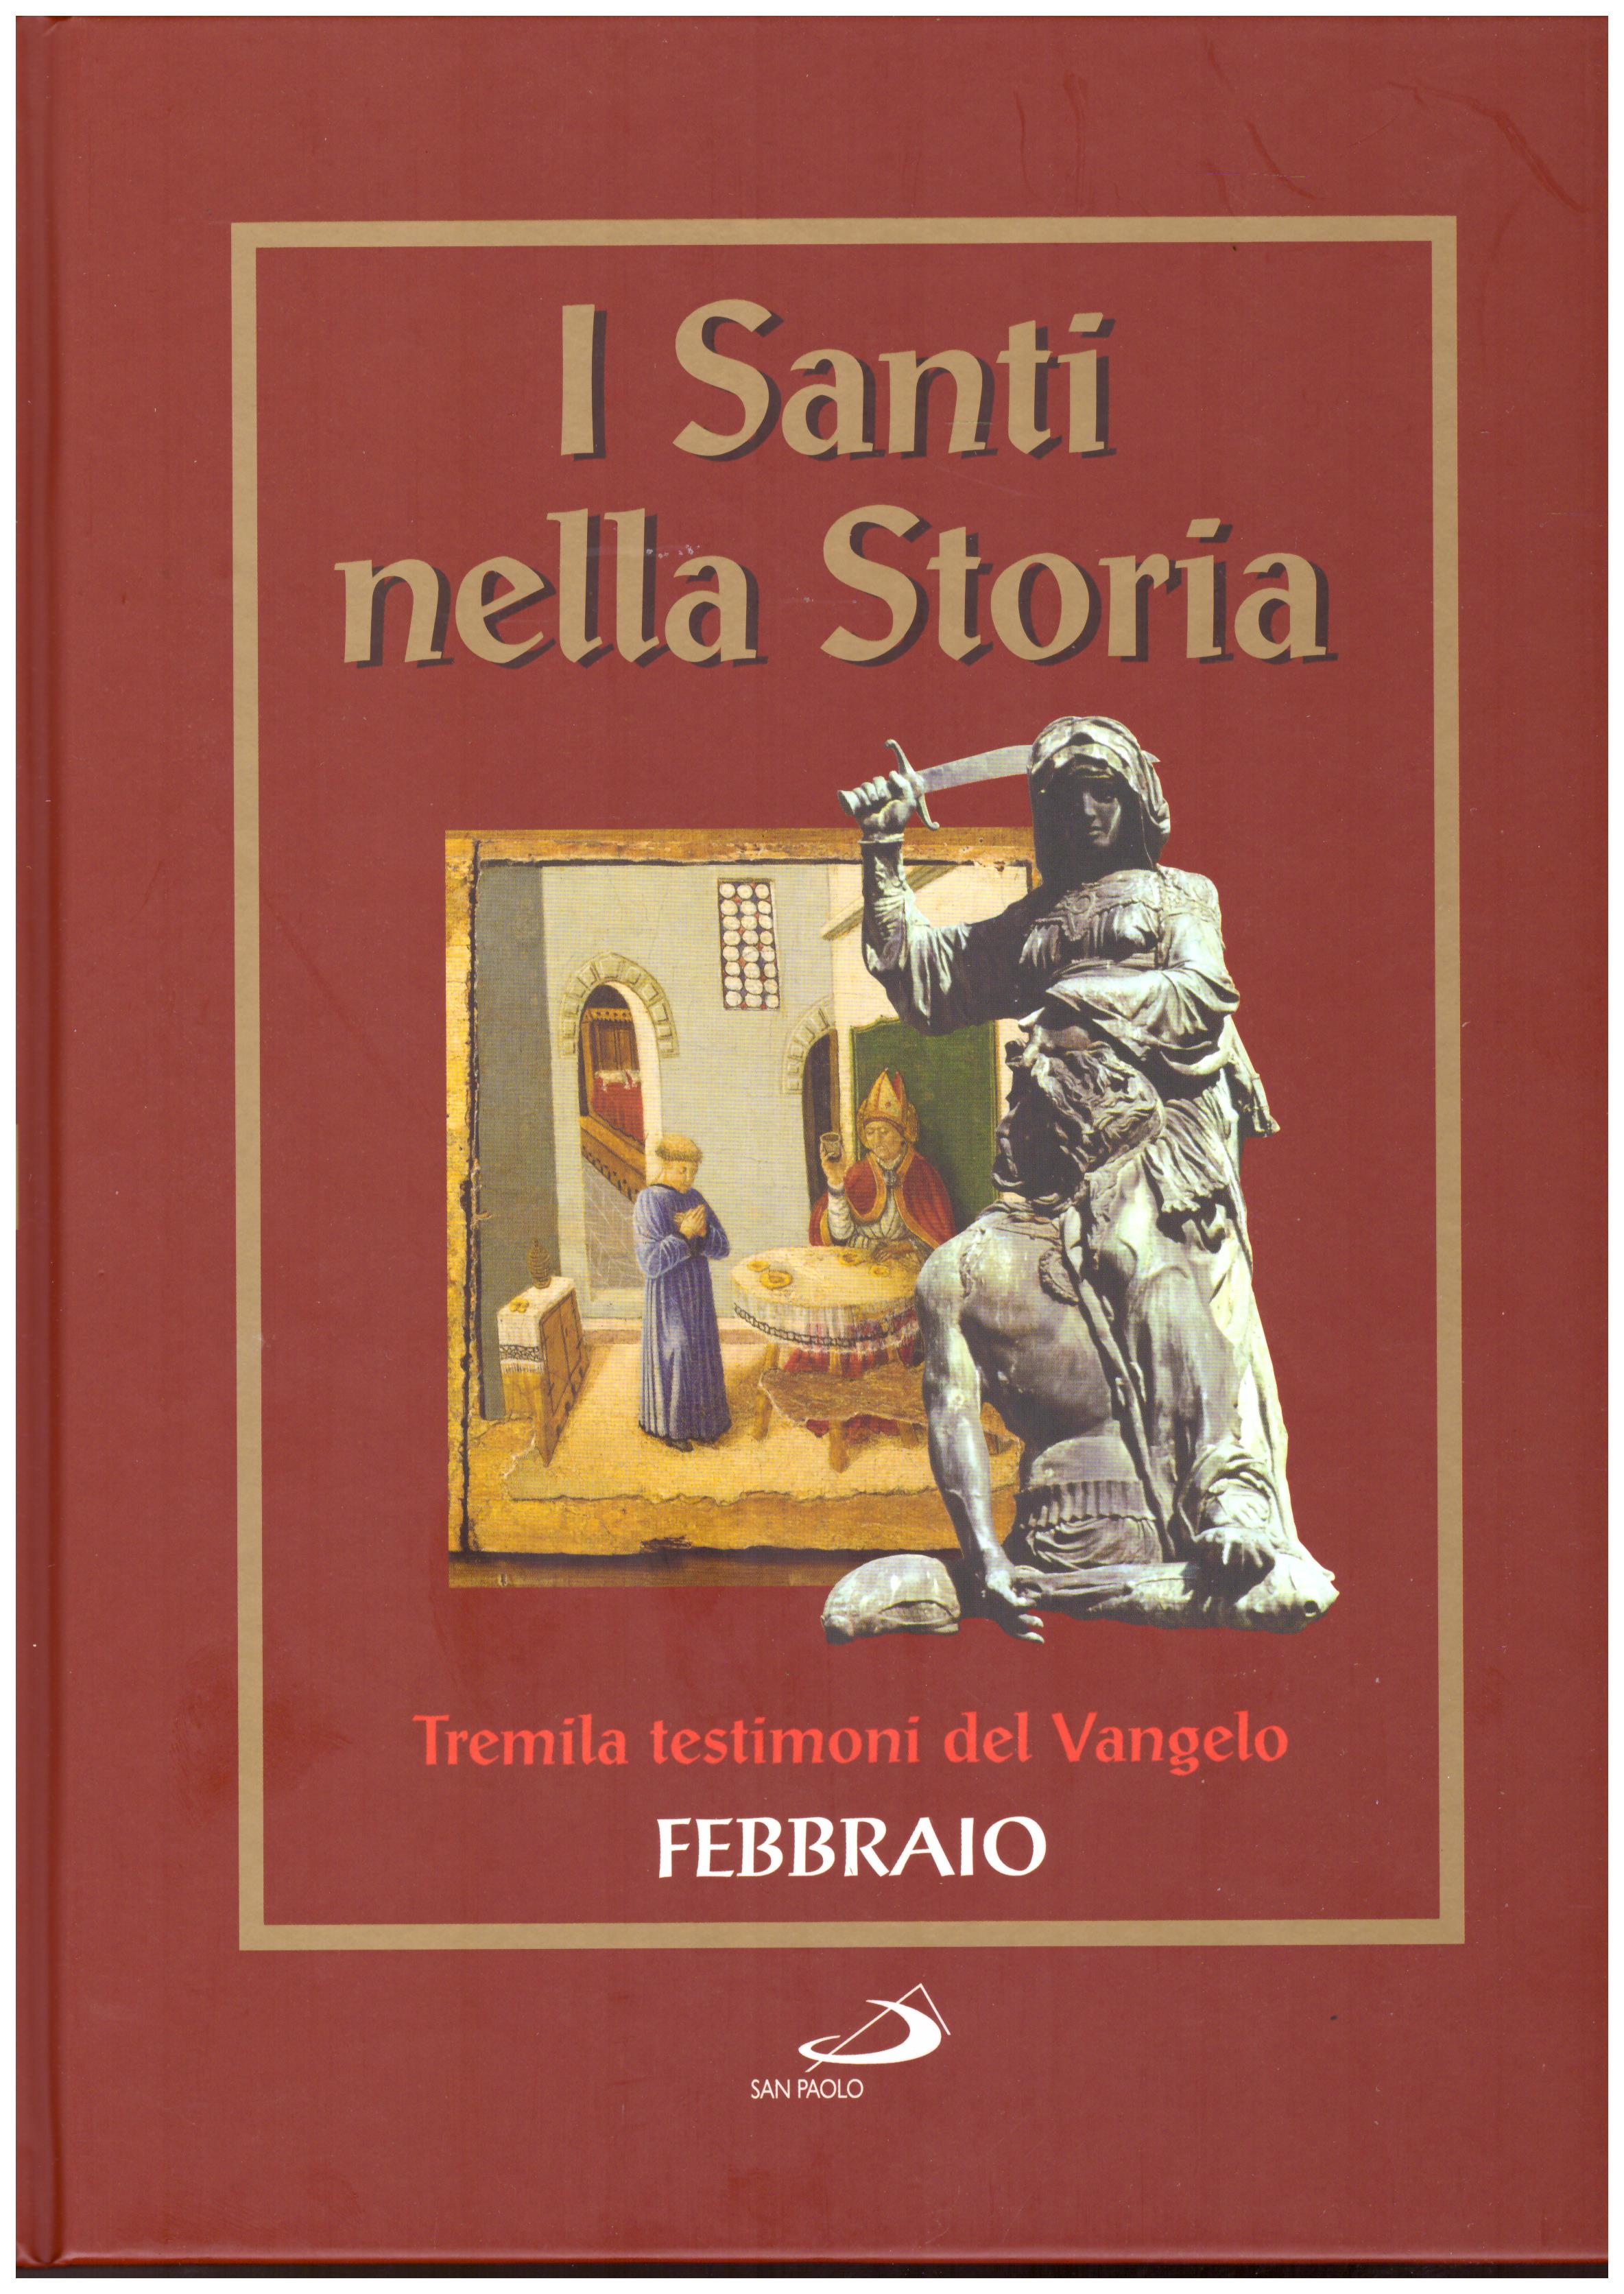 Titolo: I santi nella storia, tremila testimoni del Vangelo, Febbraio Autore : AA.VV.   Editore: San Paolo 2006